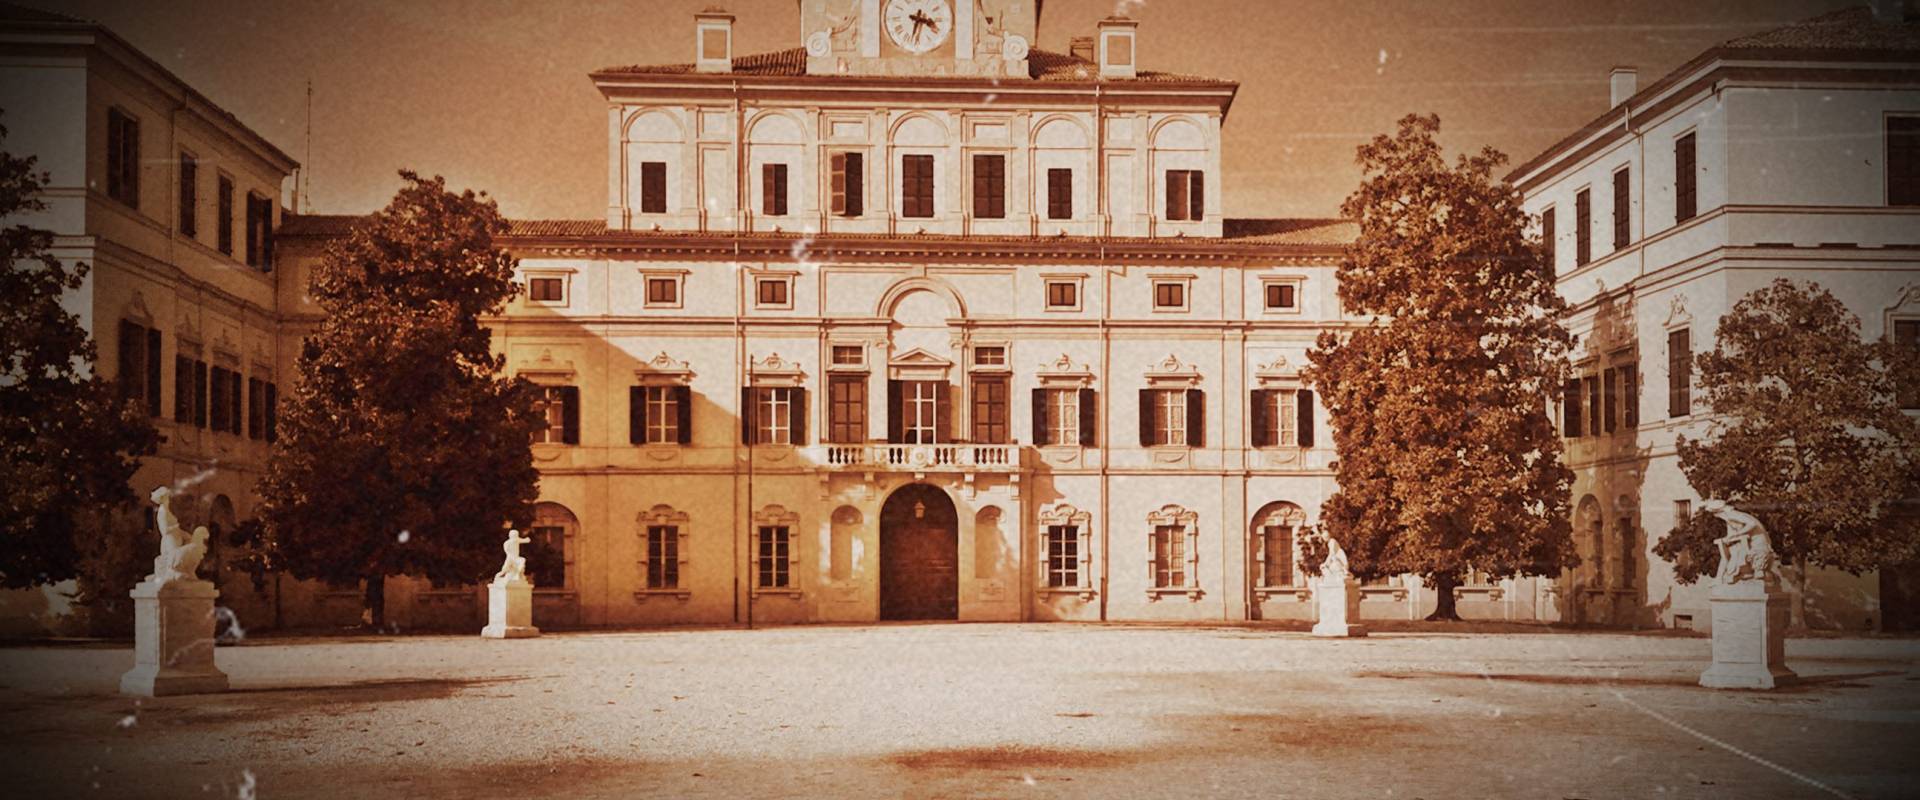 Palazzo di Maria Luigia nel Parco Ducale foto di Rocco93555